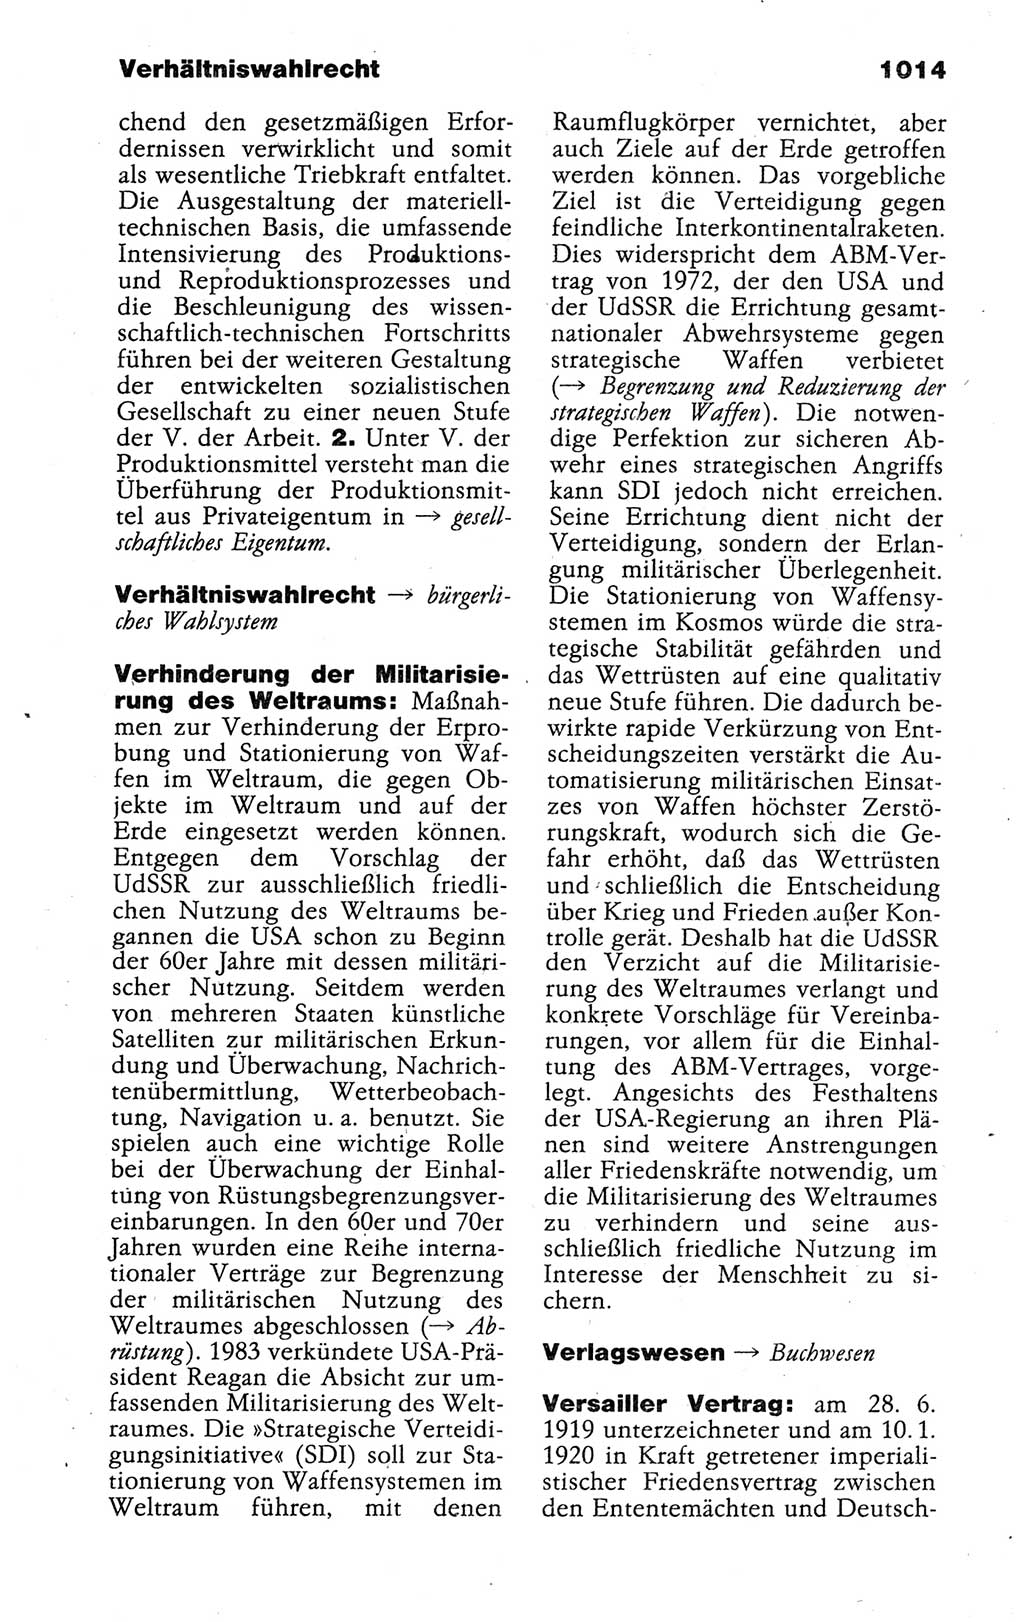 Kleines politisches Wörterbuch [Deutsche Demokratische Republik (DDR)] 1988, Seite 1014 (Kl. pol. Wb. DDR 1988, S. 1014)